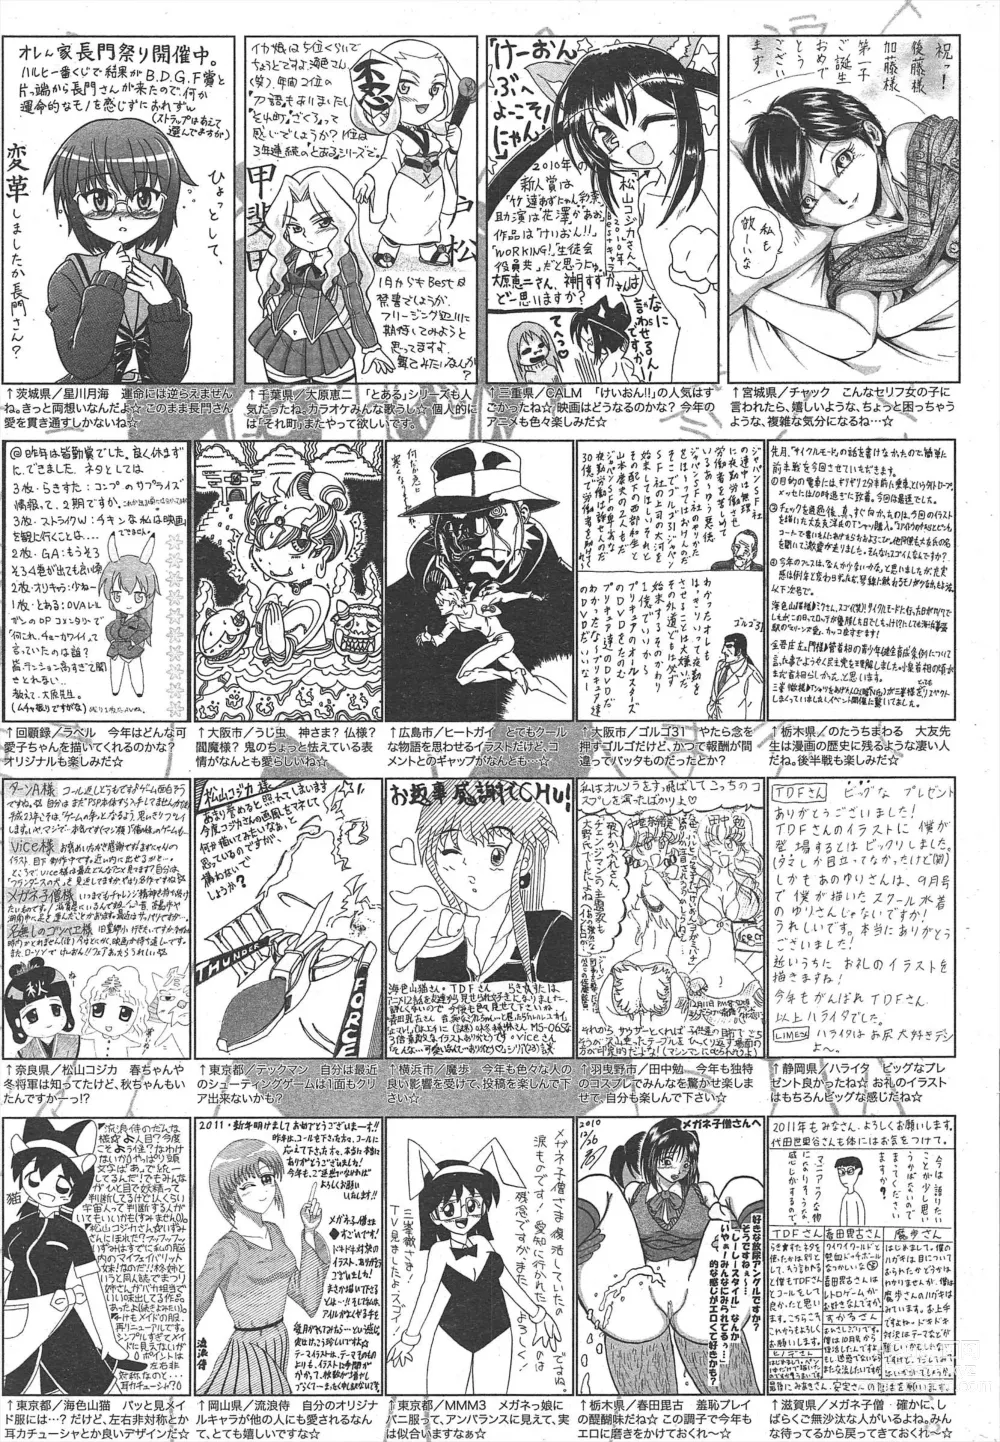 Page 259 of manga Manga Bangaichi 2011-03